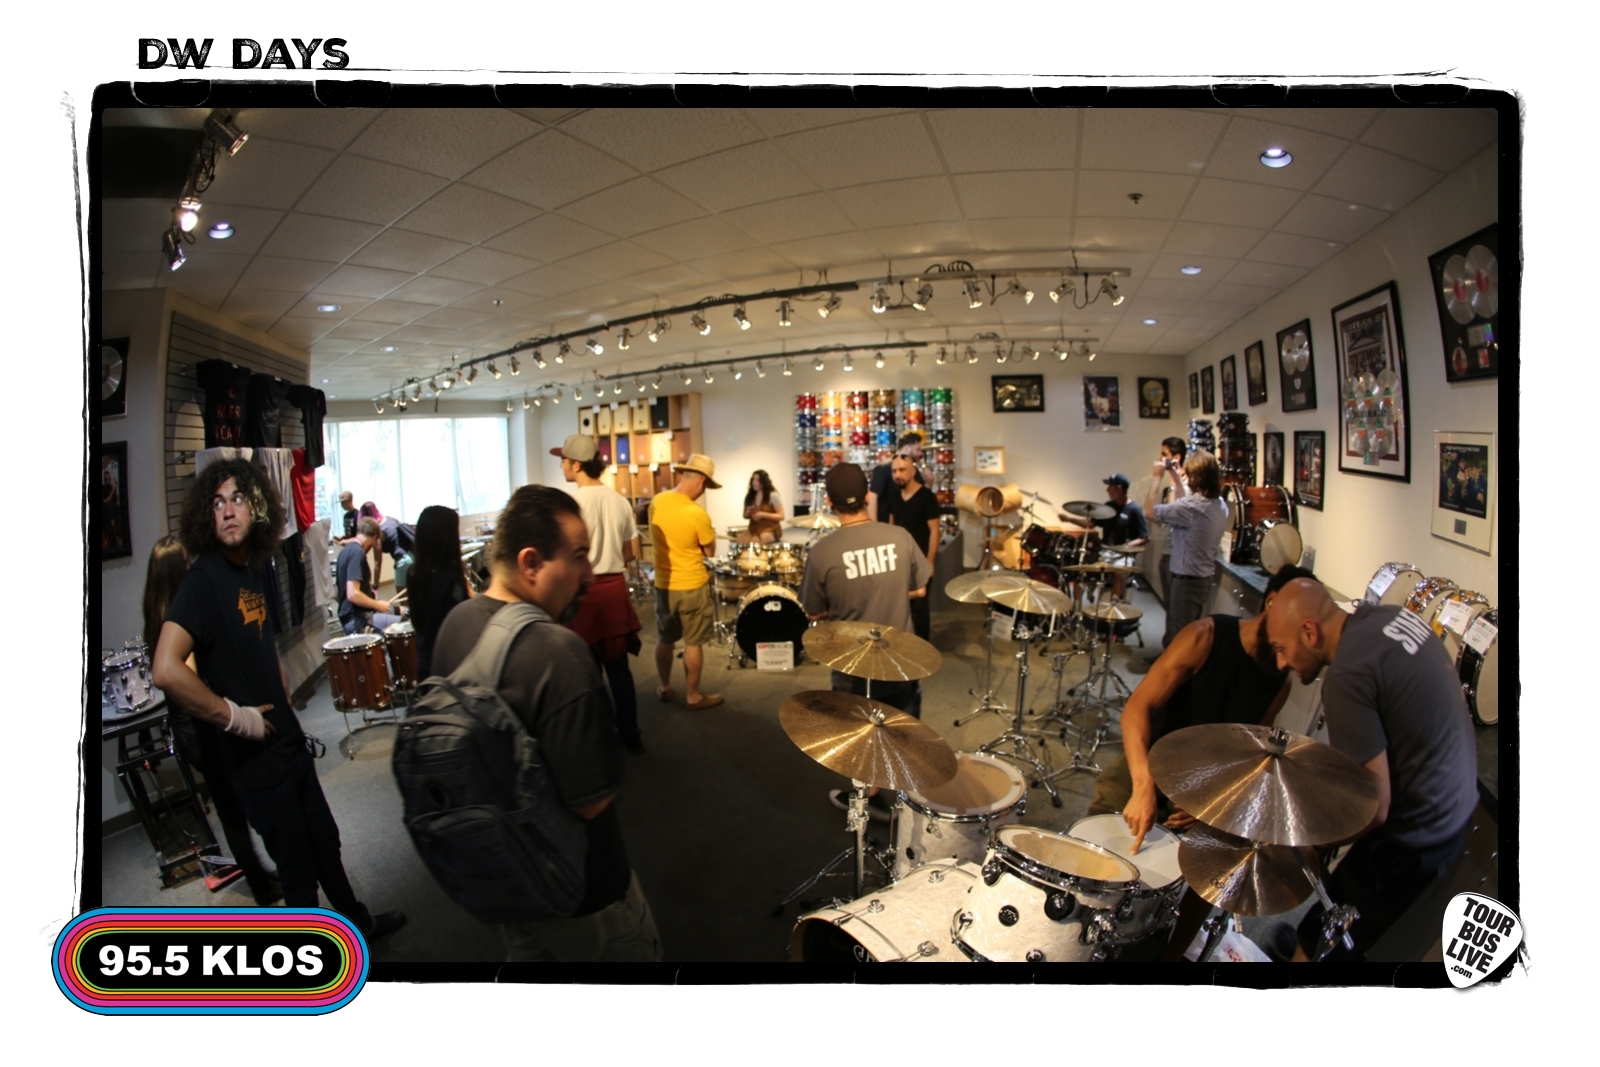 DW Days, 08-05-17, Drum Workshop, Inc., Oxnard, CA. © 2017 TourBusLive.com